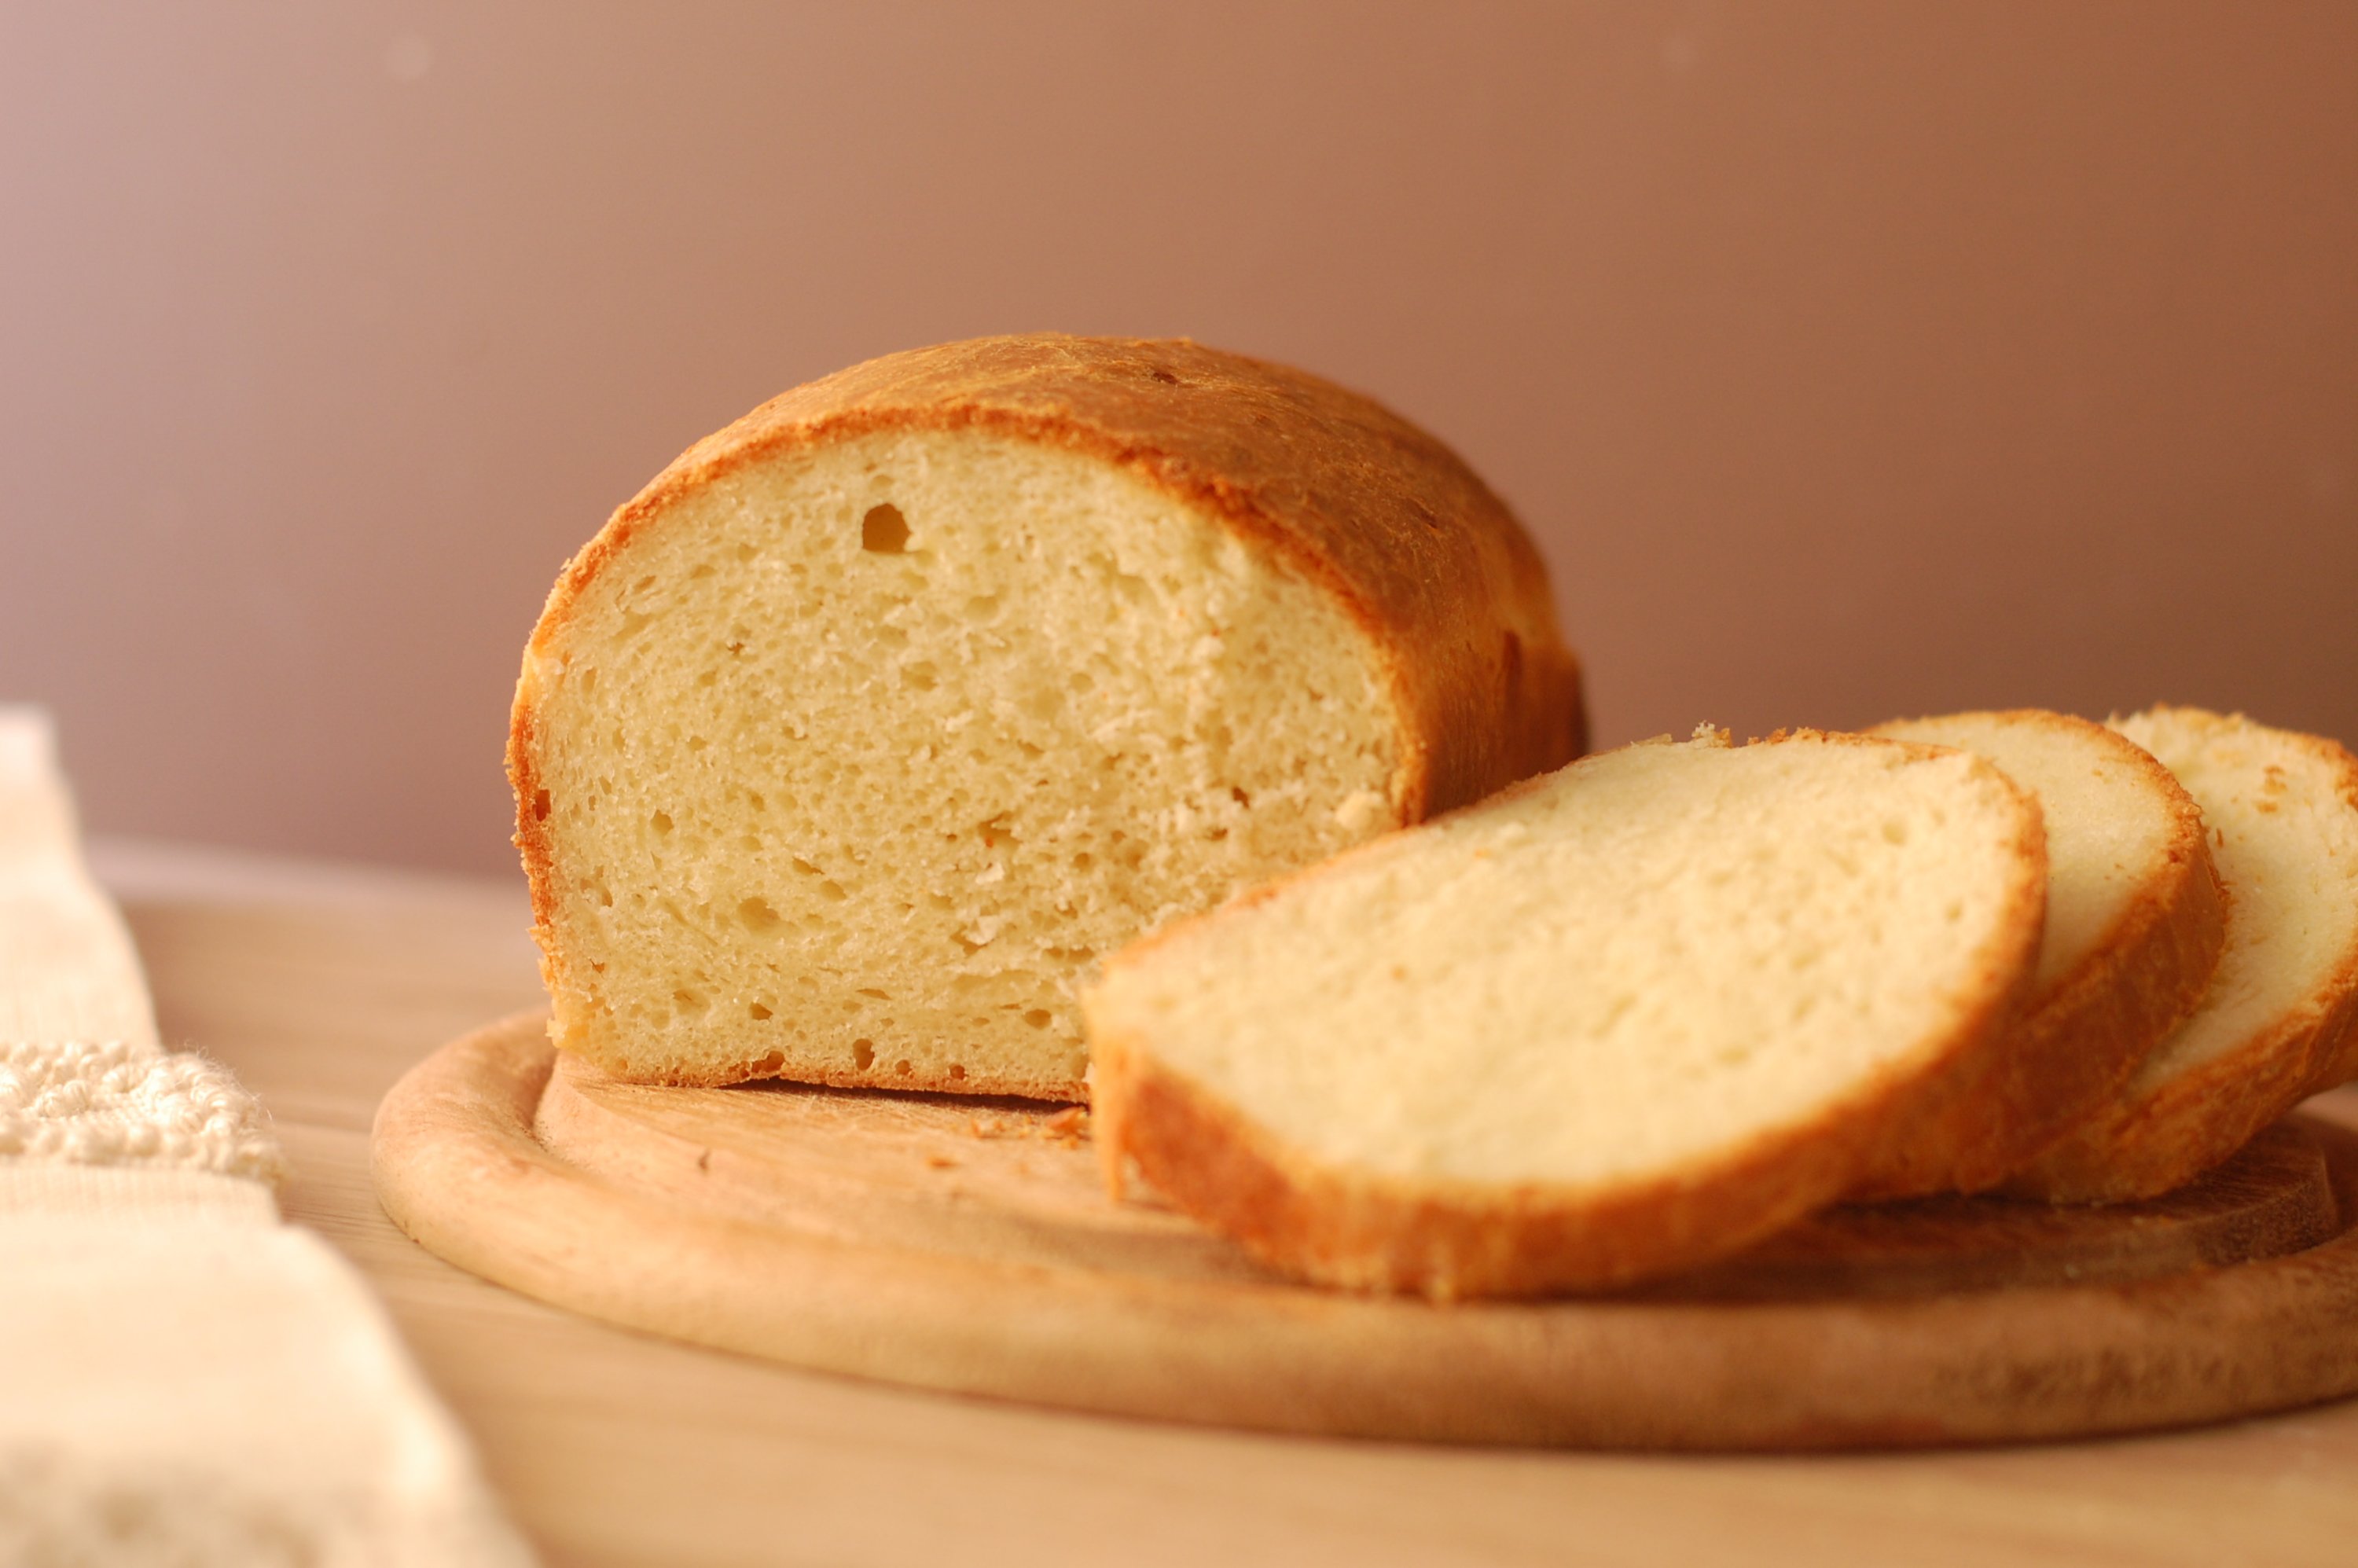 Pane in cassetta con lievito madre - Vegano Gourmand